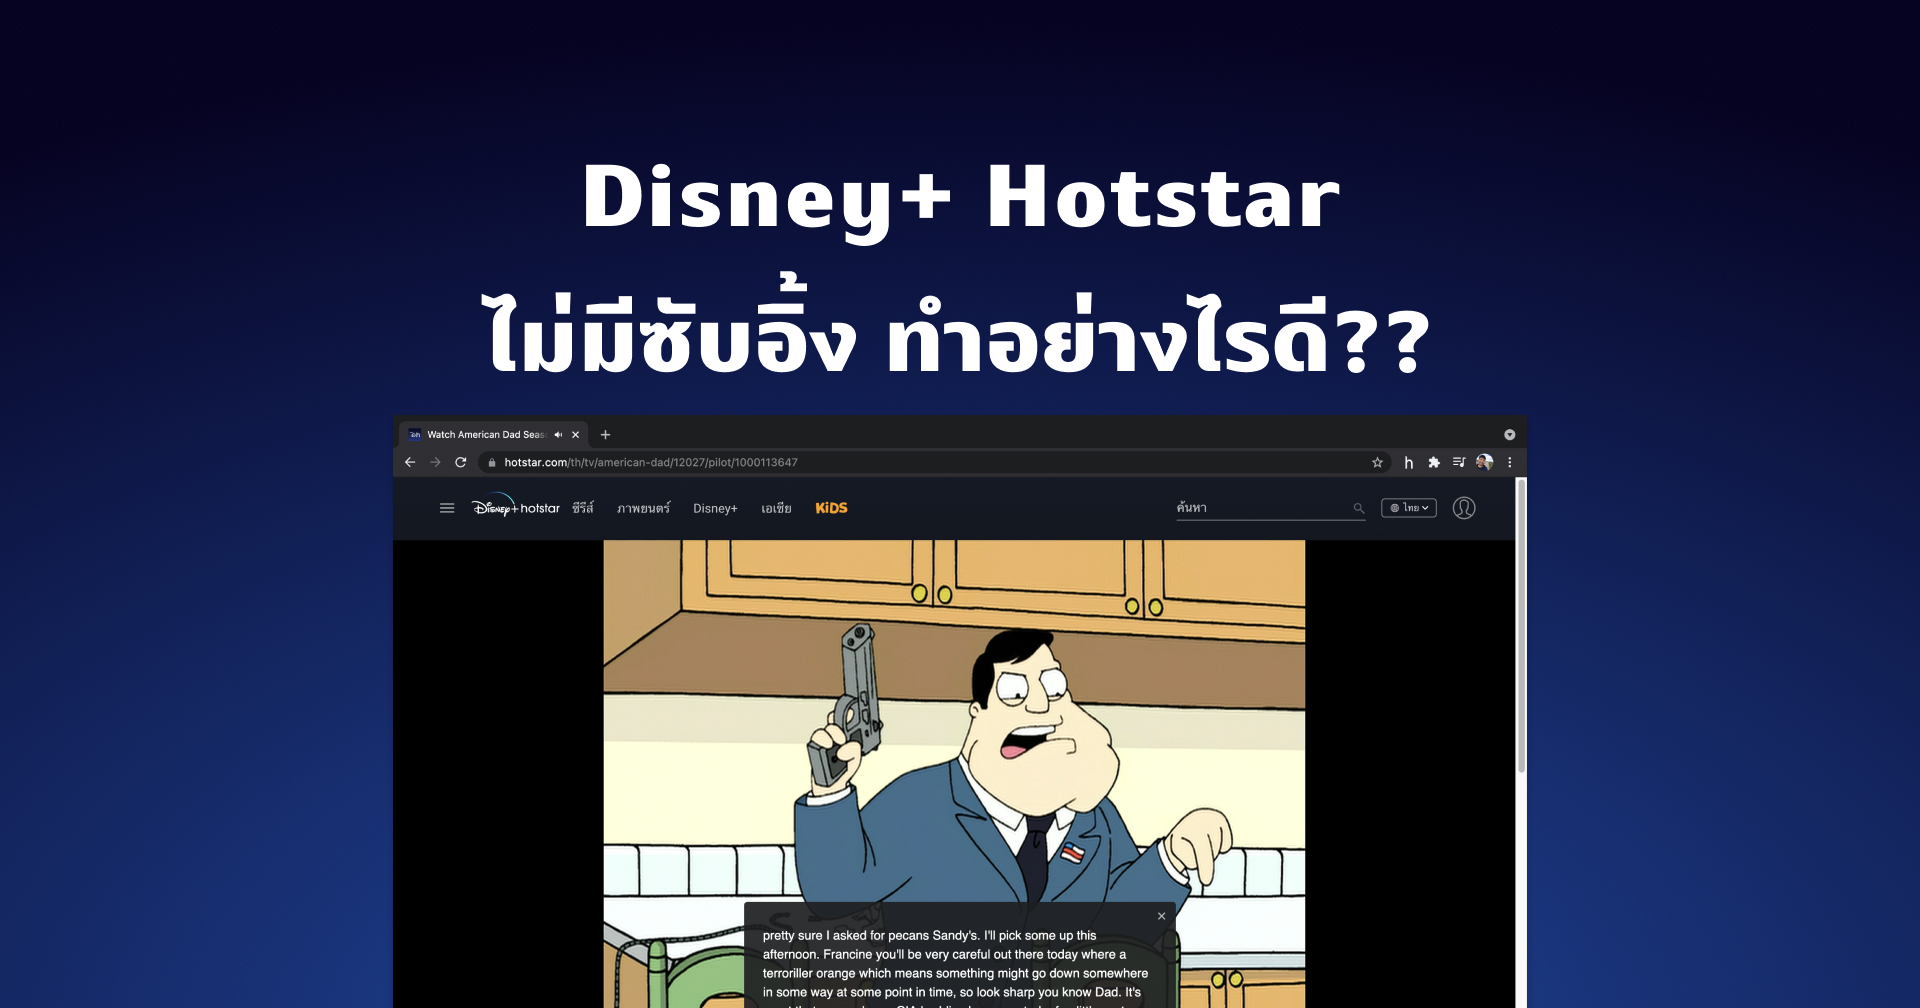 ฝึกภาษาอังกฤษกับ Disney+ Hotstar แต่ดันไม่มีซับอังกฤษให้ ทำอย่างไรดี??